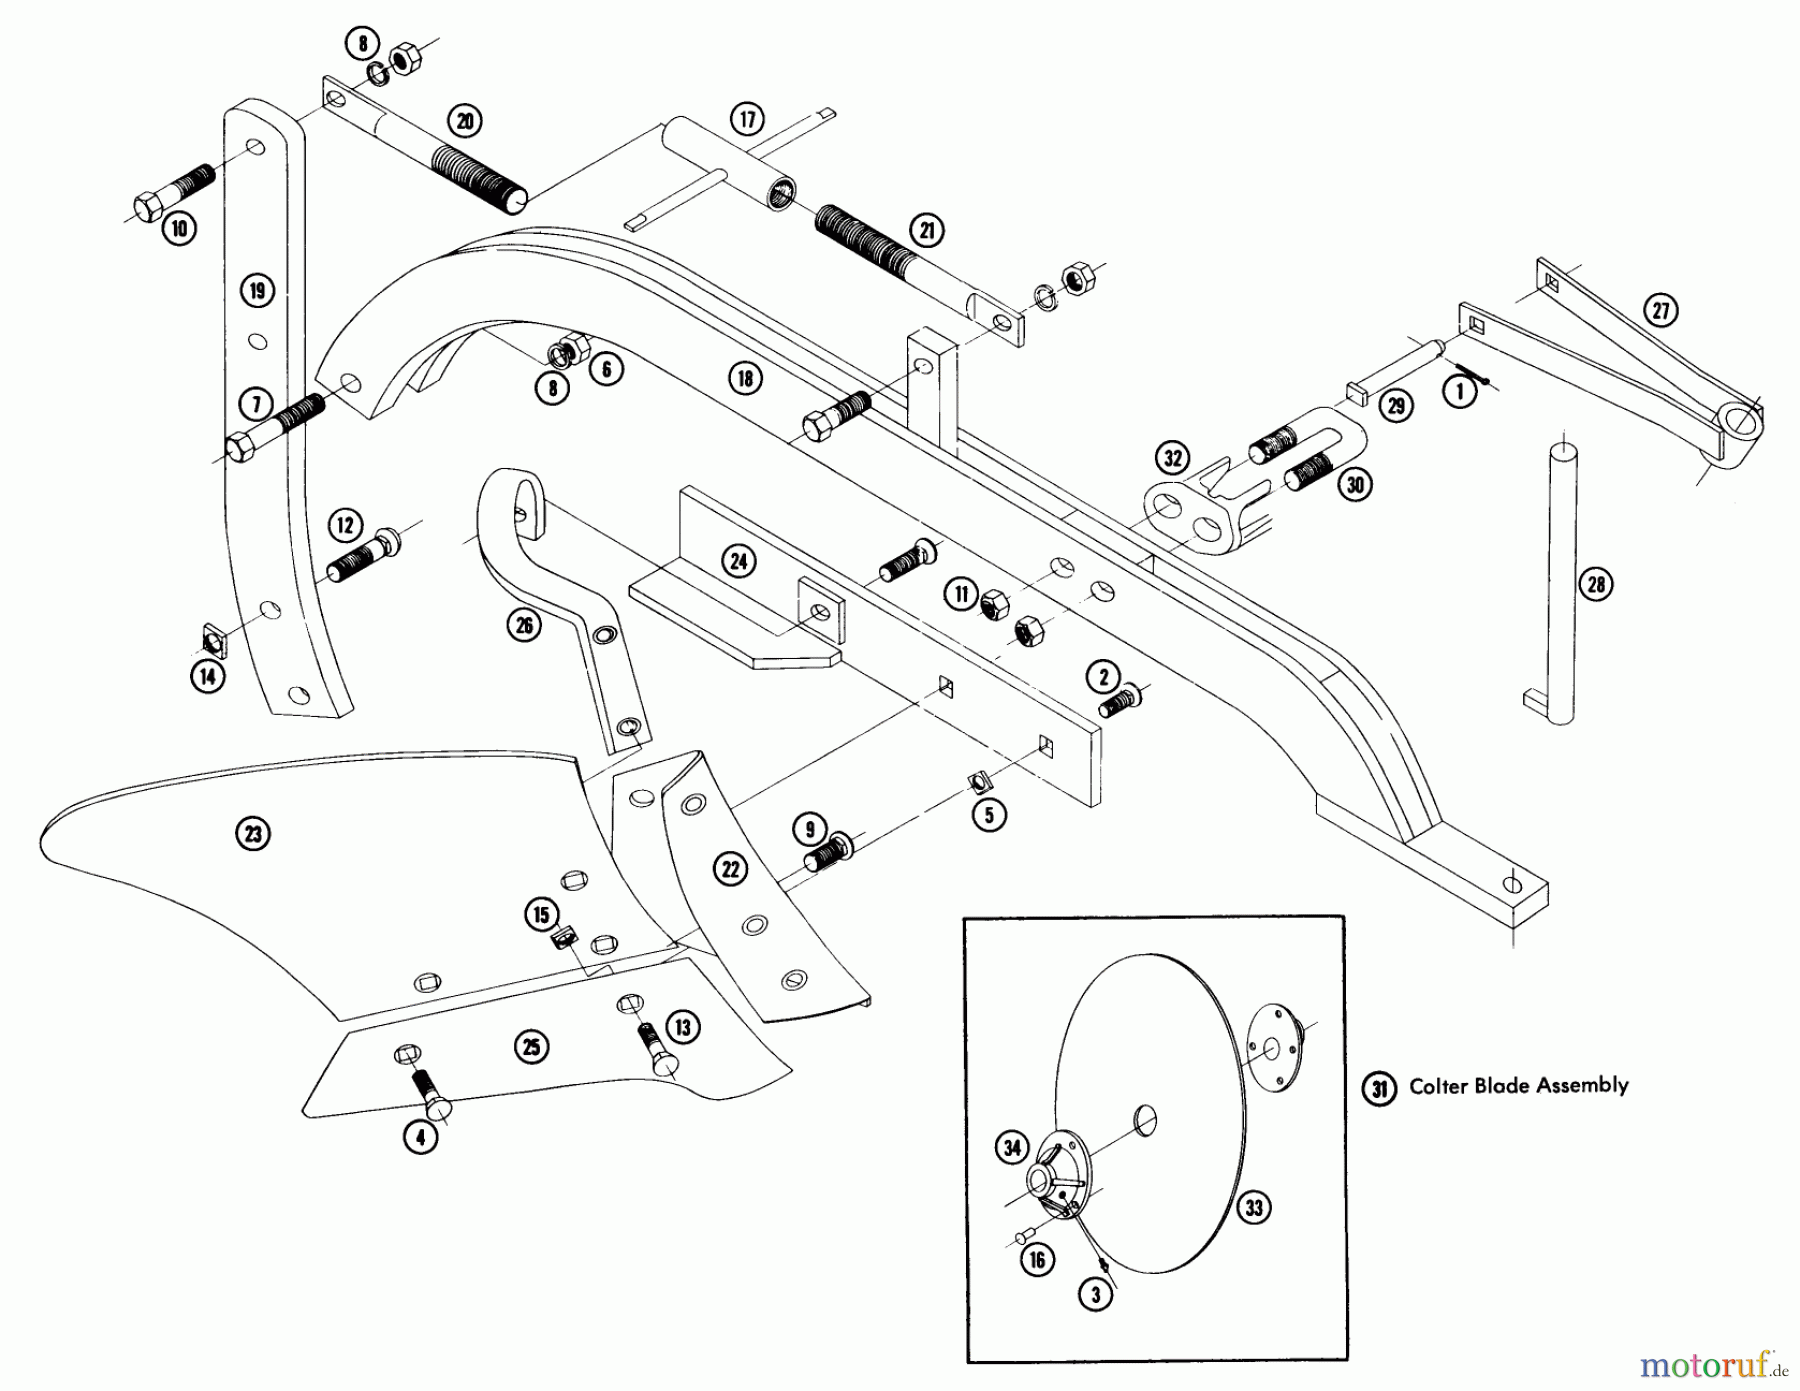  Toro Neu Accessories SC-15 - Toro Aerator, 1960 PLOW & COULTER PP-101 PARTS LIST